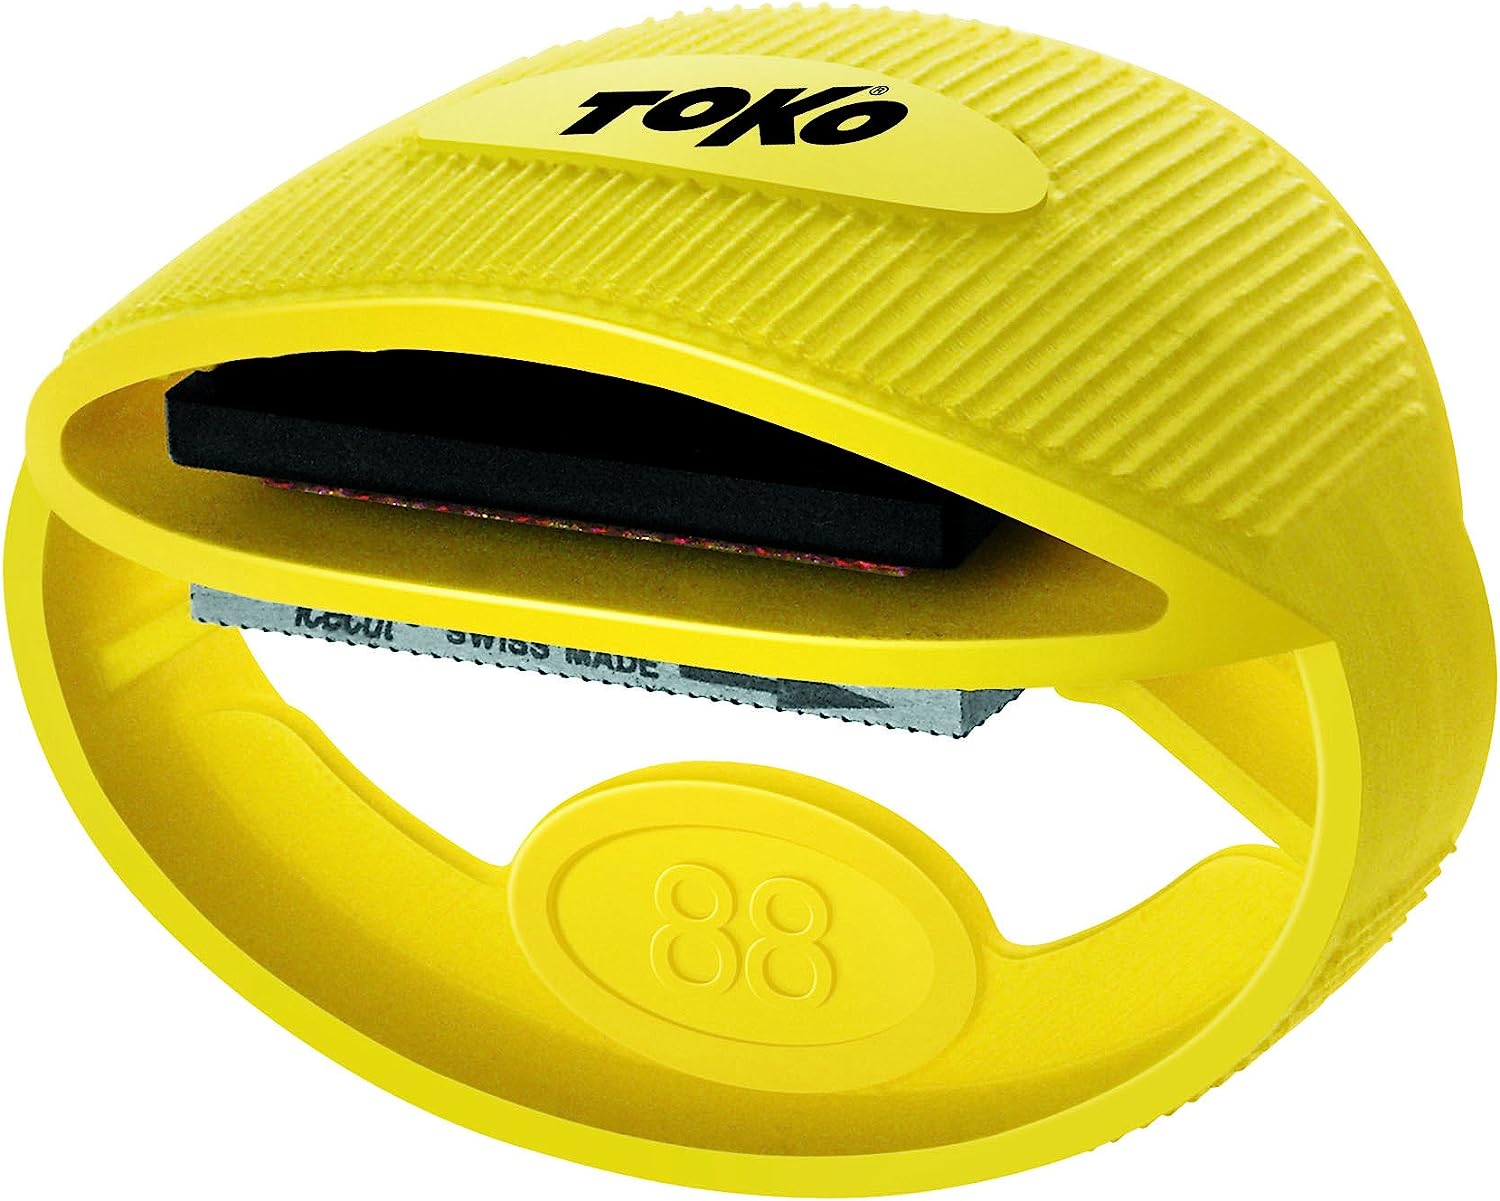 Toko Express Tuner Ski or Snowboard Servicing Tool